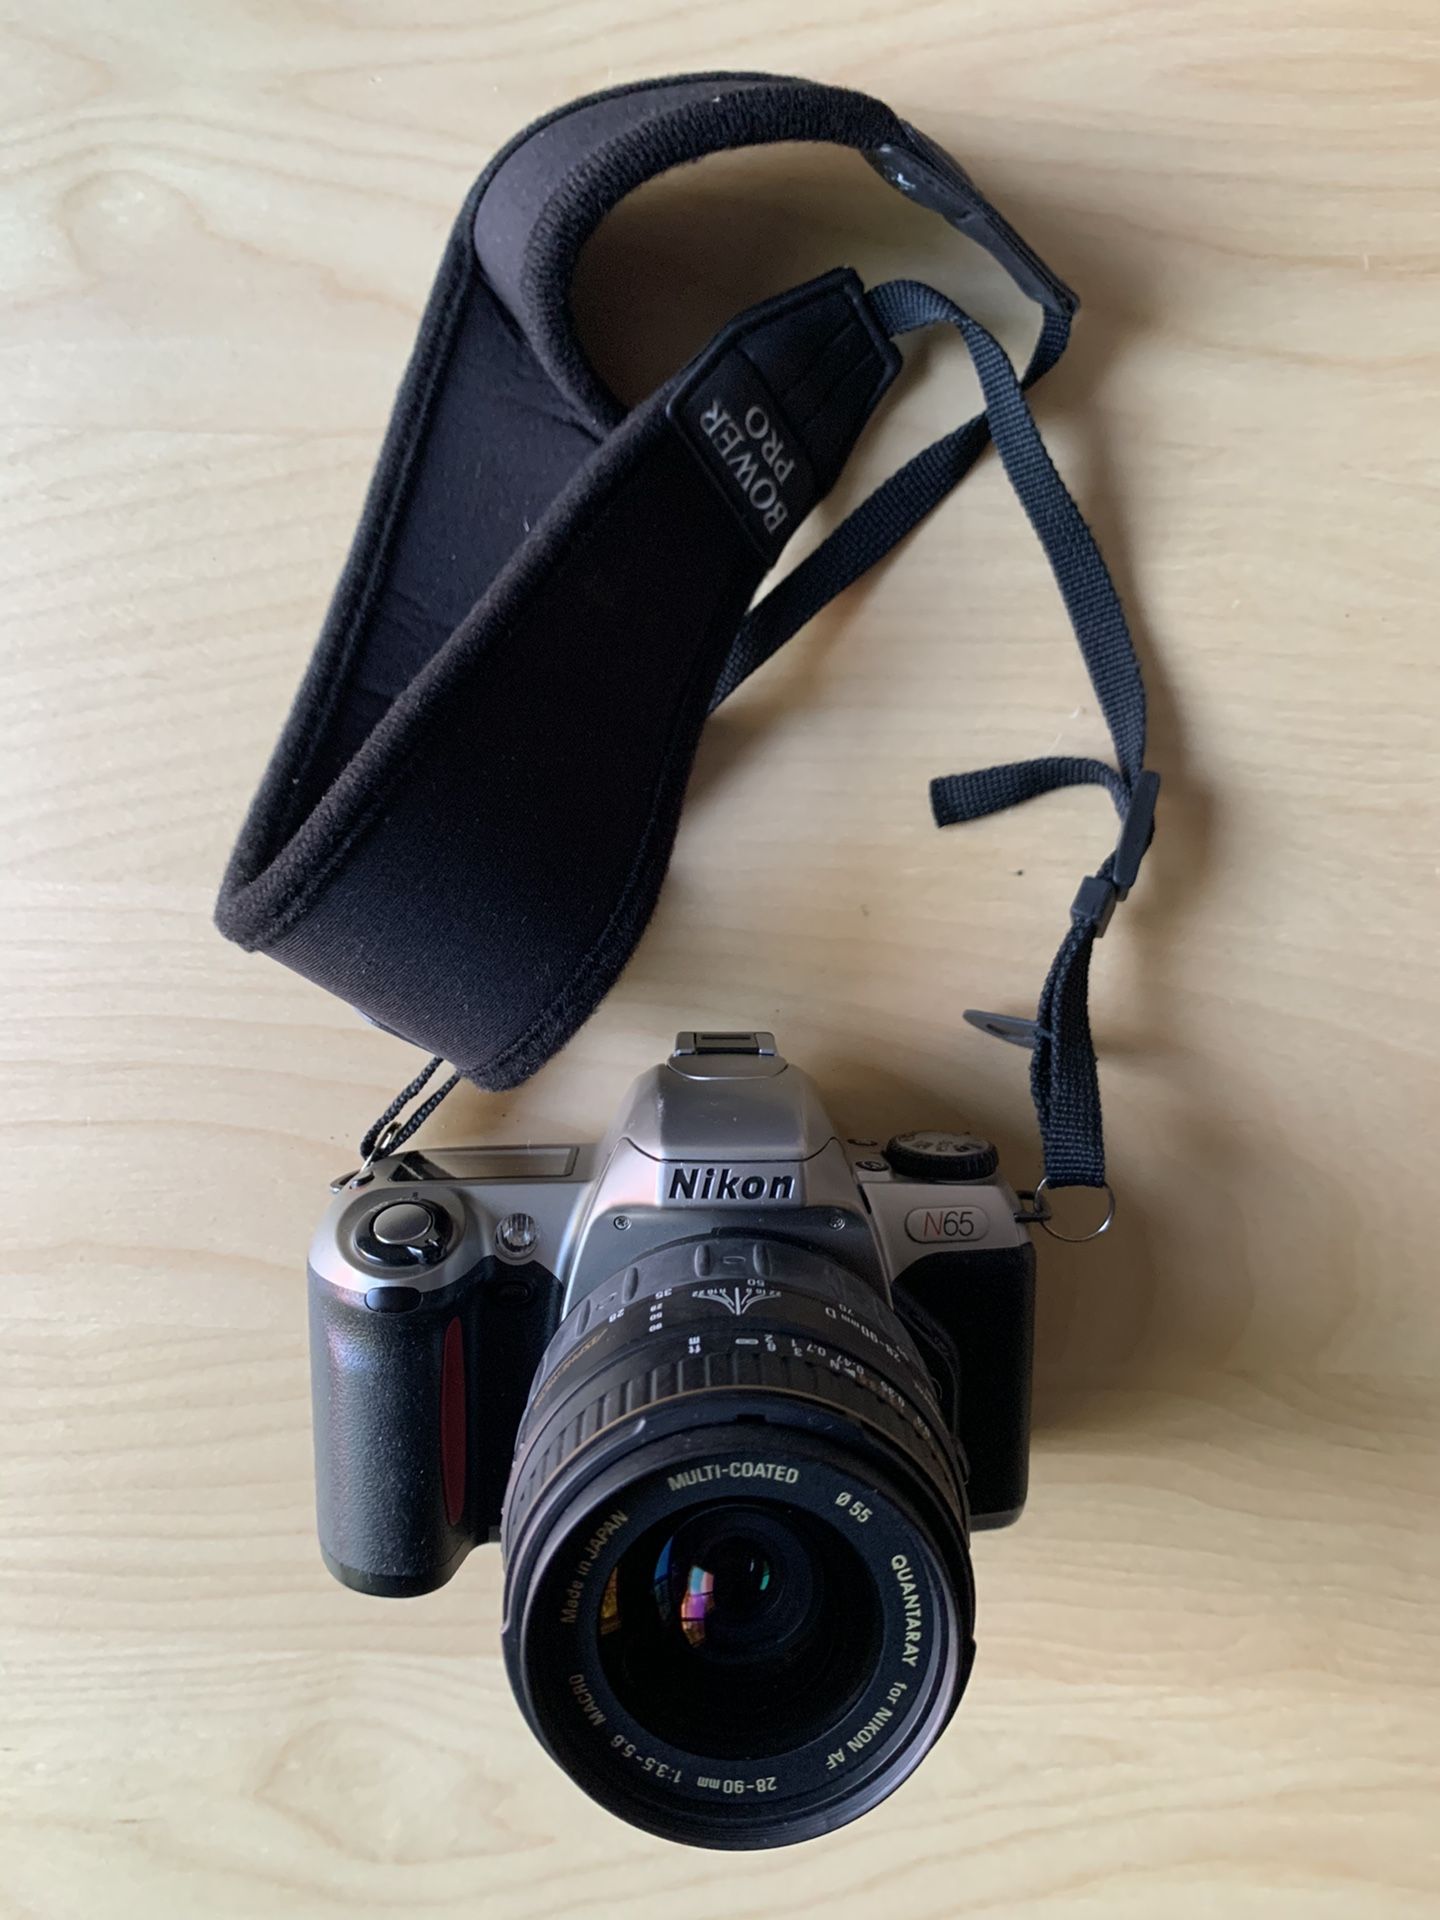 Nikon N65, 35mm film camera, with strap